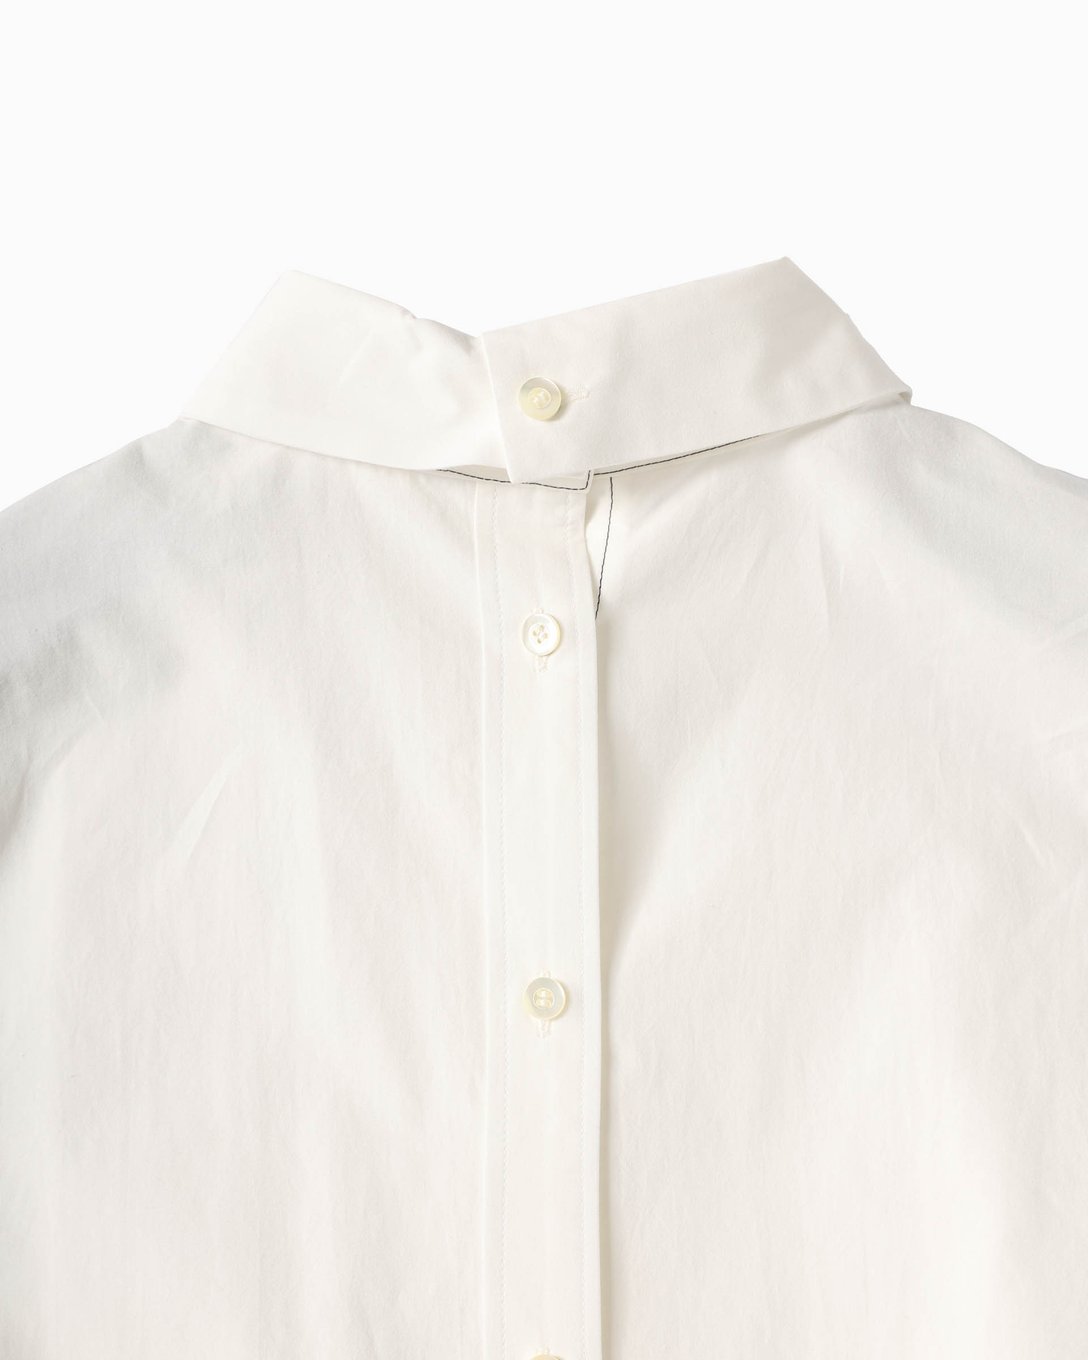 ウジョー の白シャツの襟元